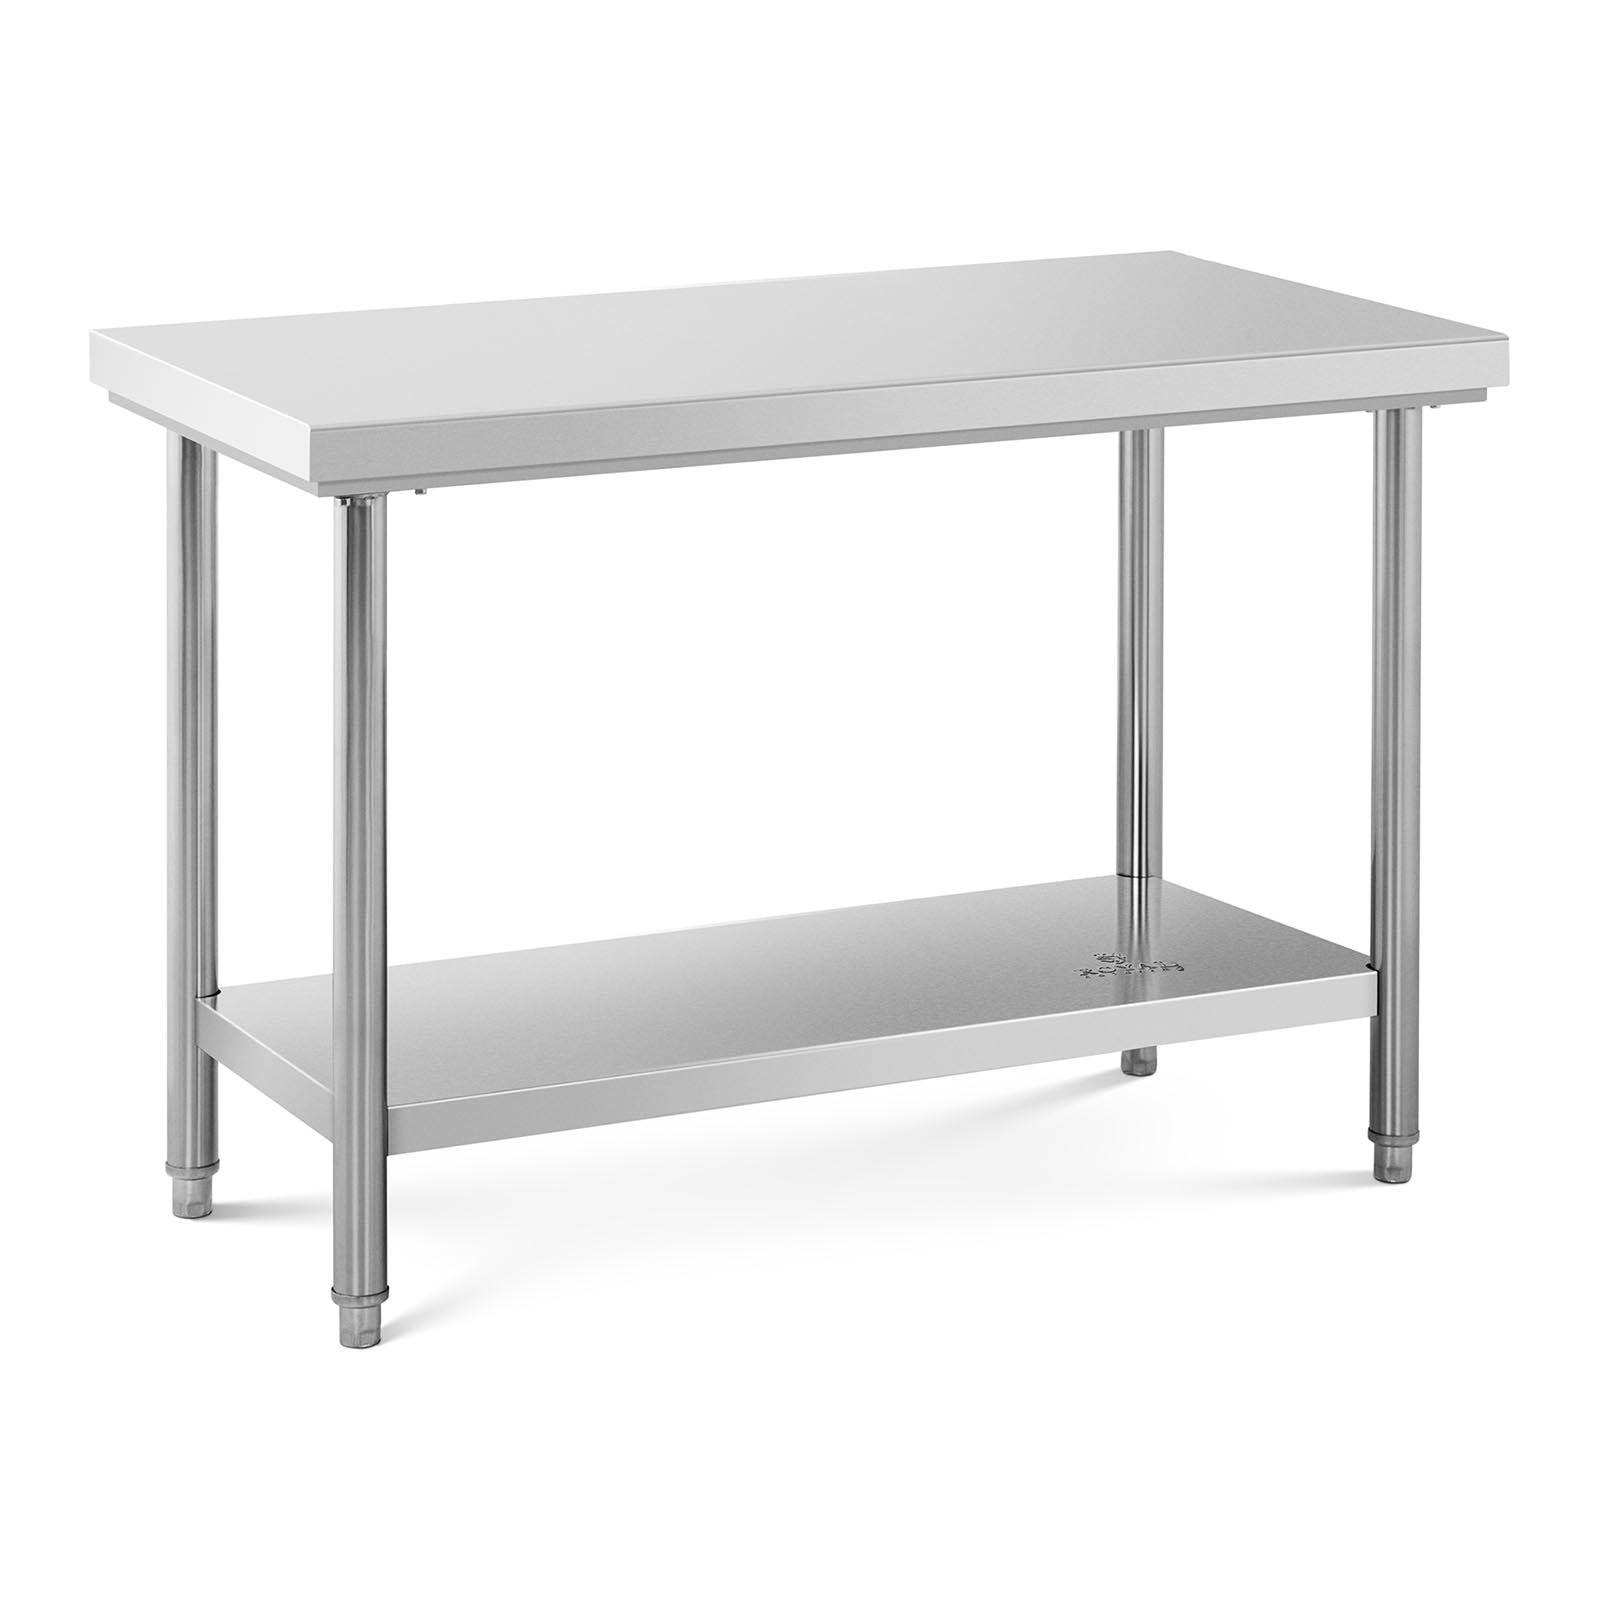 Τραπέζι από ανοξείδωτο ατσάλι - 120 x 60 cm - χωρητικότητα 137 kg